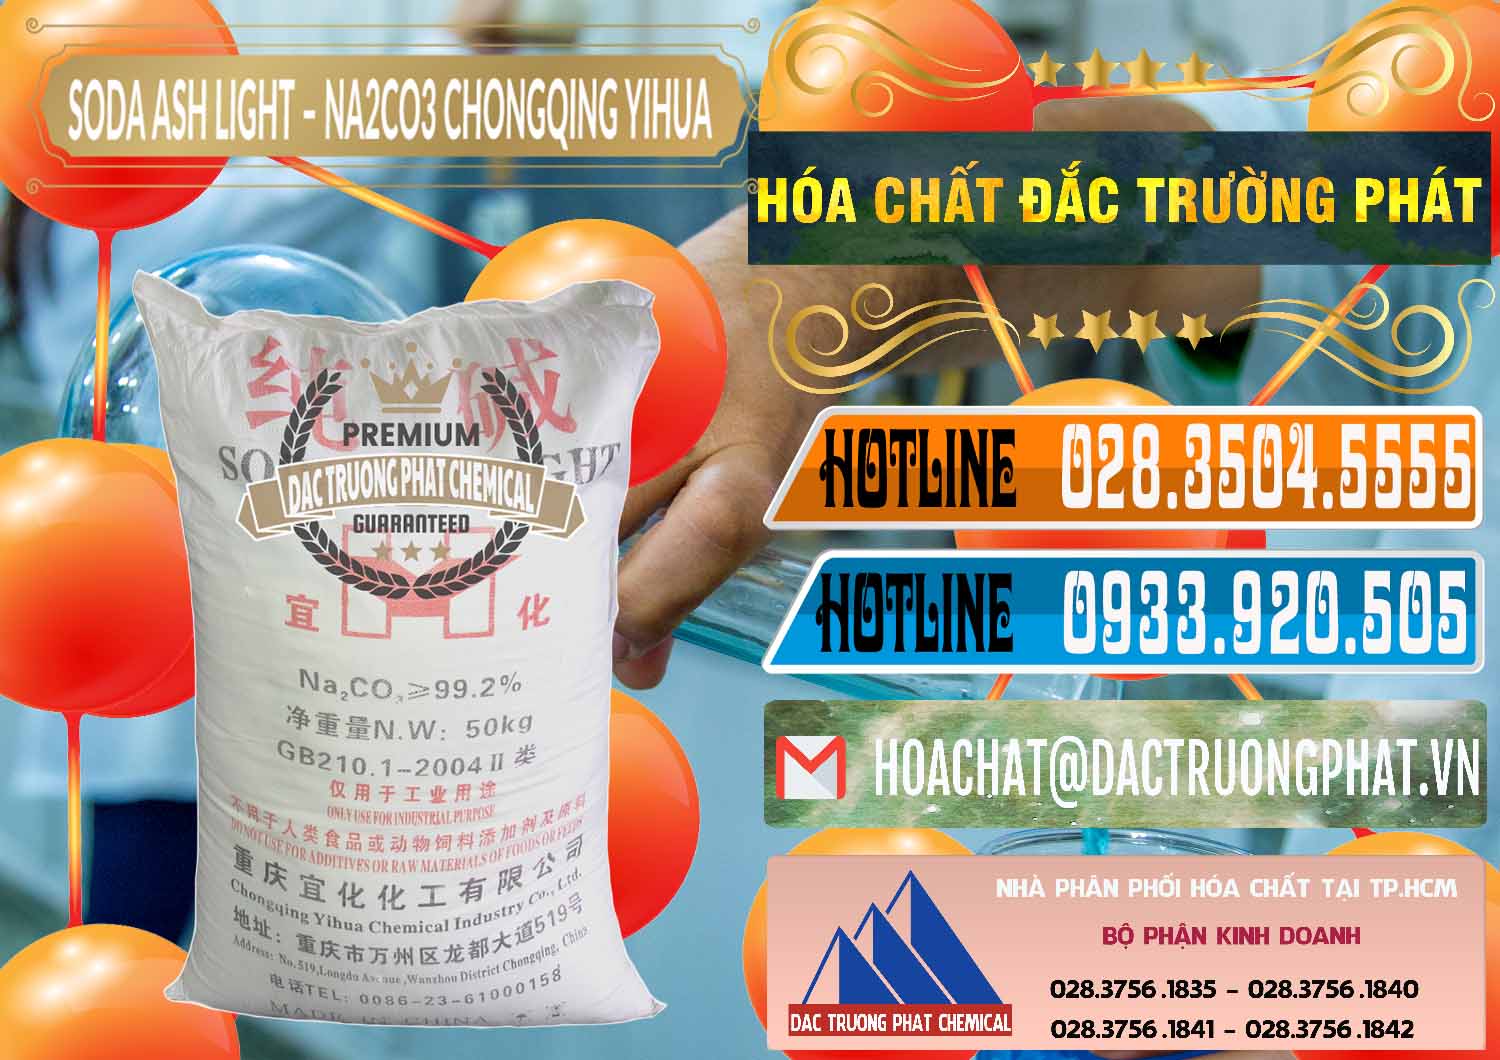 Cty chuyên kinh doanh - bán Soda Ash Light - NA2CO3 Chongqing Yihua Trung Quốc China - 0129 - Đơn vị cung cấp ( nhập khẩu ) hóa chất tại TP.HCM - stmp.net